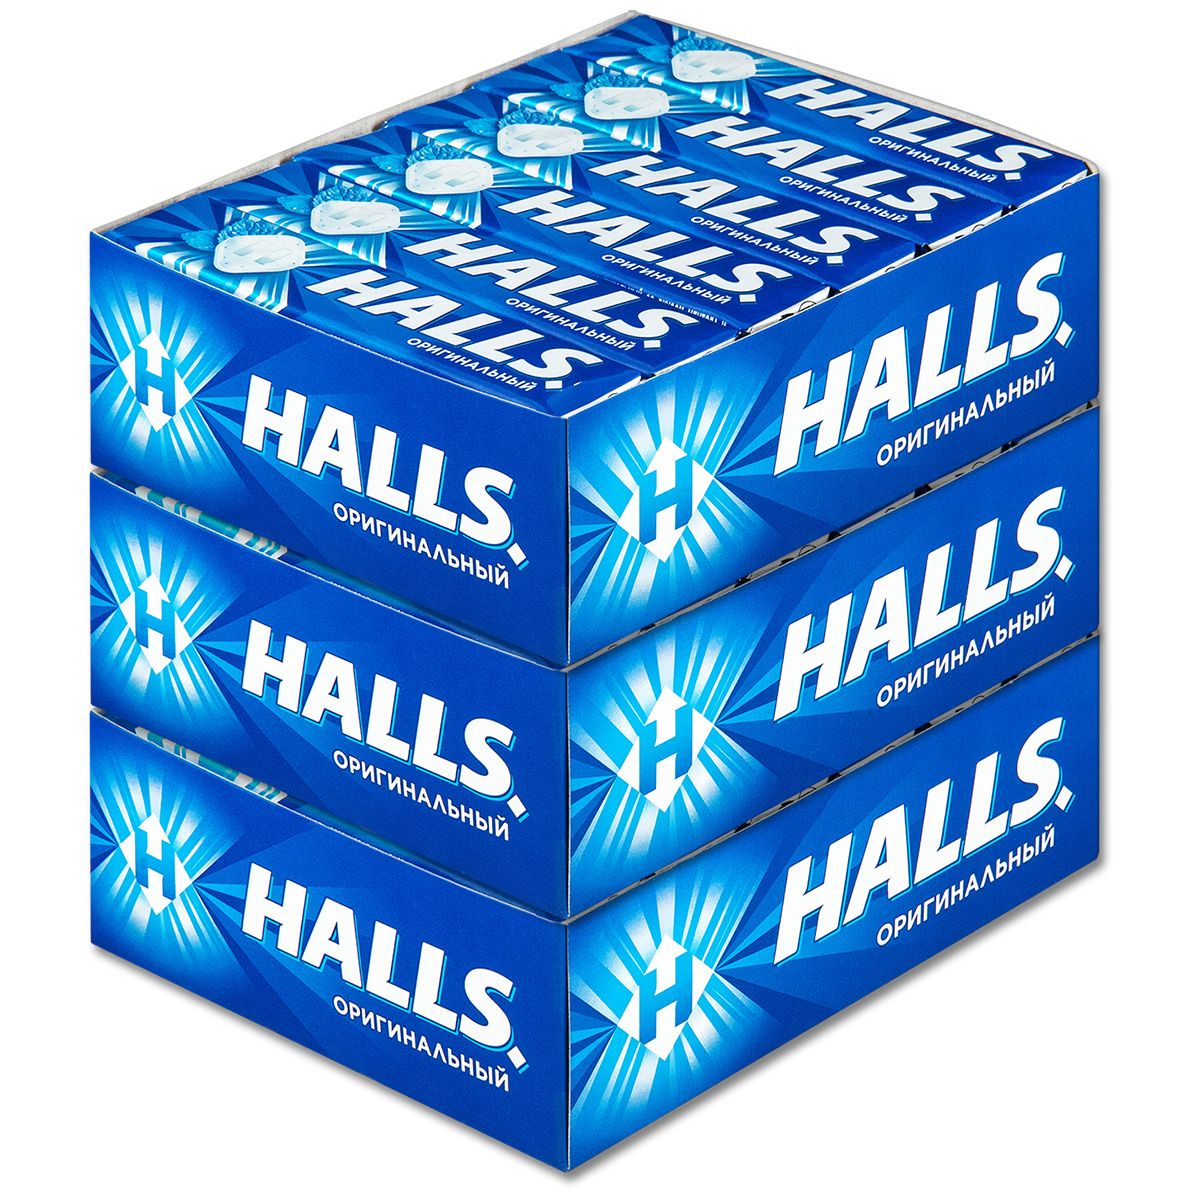 Halls леденцы. Halls оригинальный. Halls синий. Halls леденцы синие. Halls вкусы